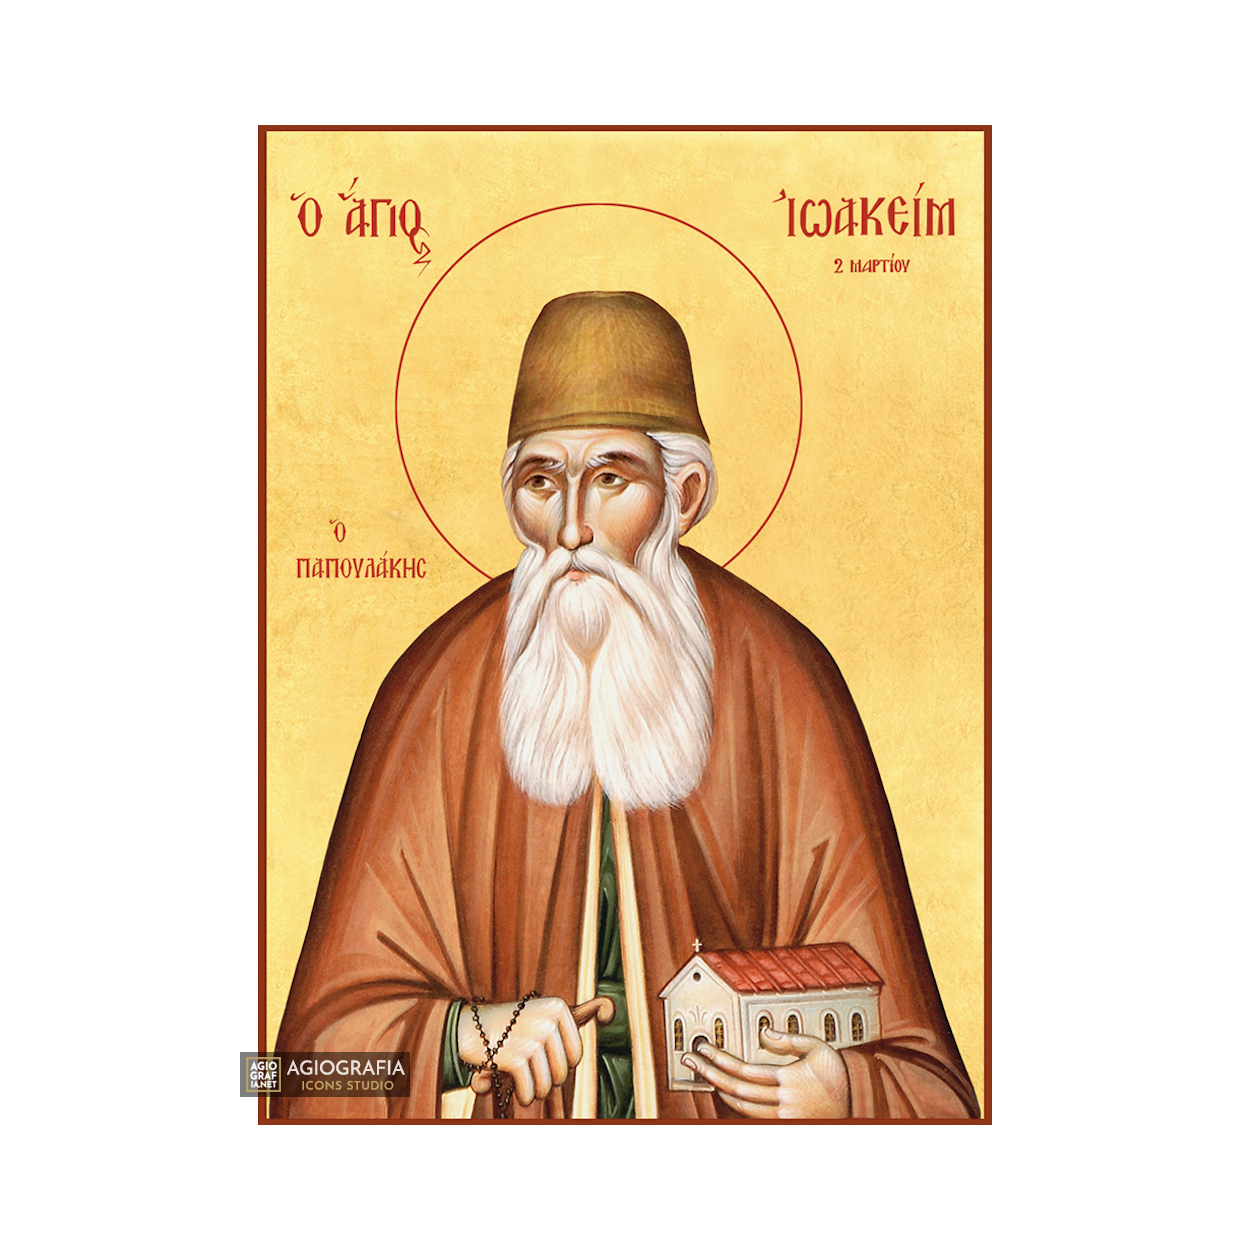 22k St Joachim Papoulakos - Gold Leaf Background Orthodox Icon